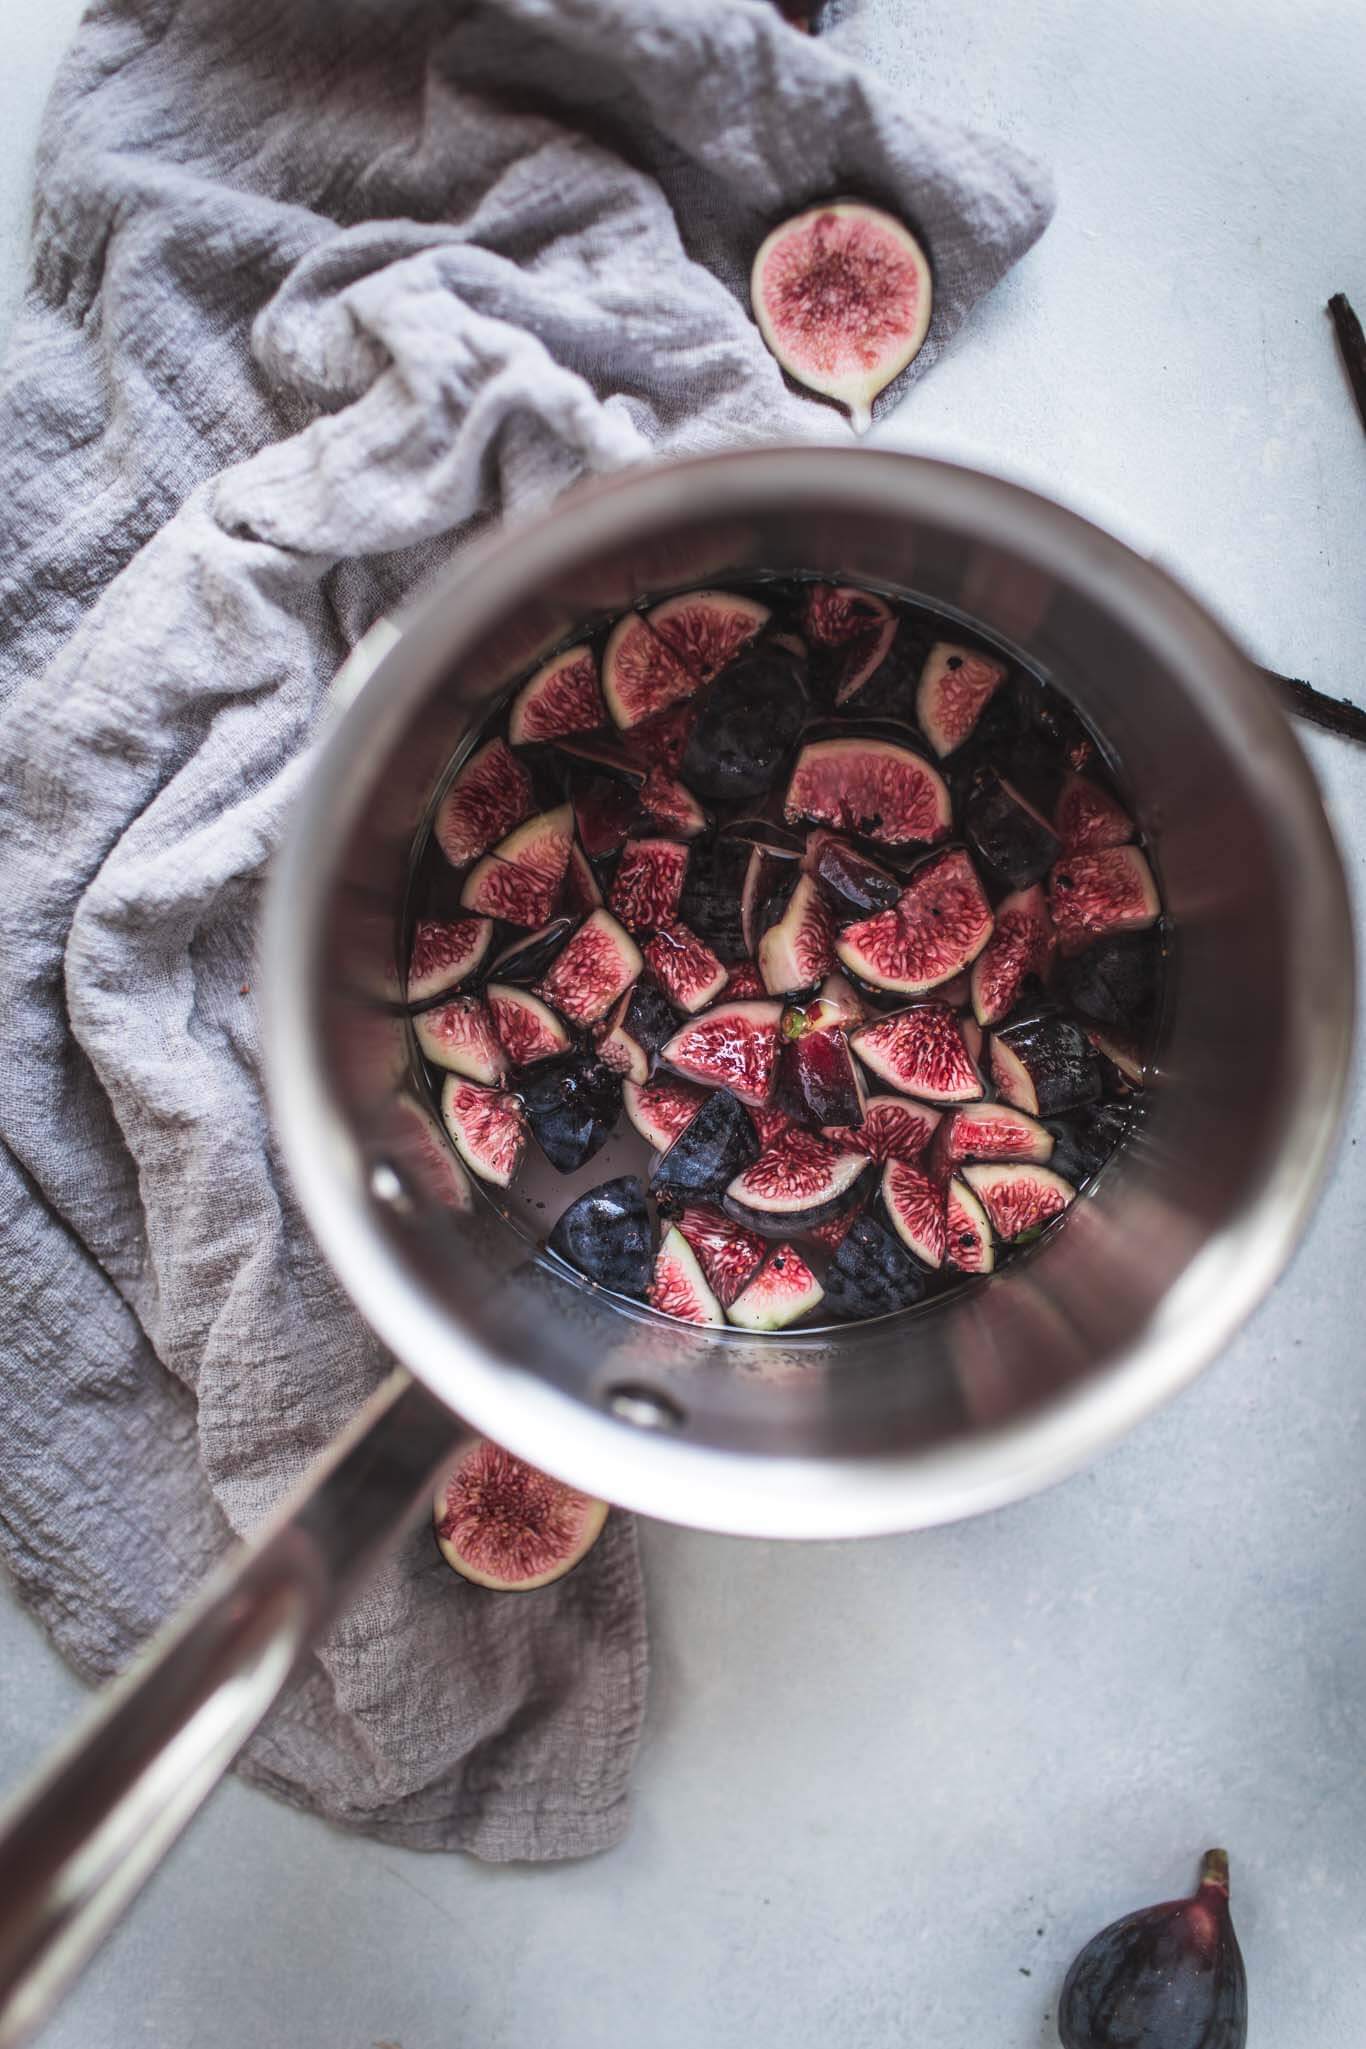 Figs in saucepan